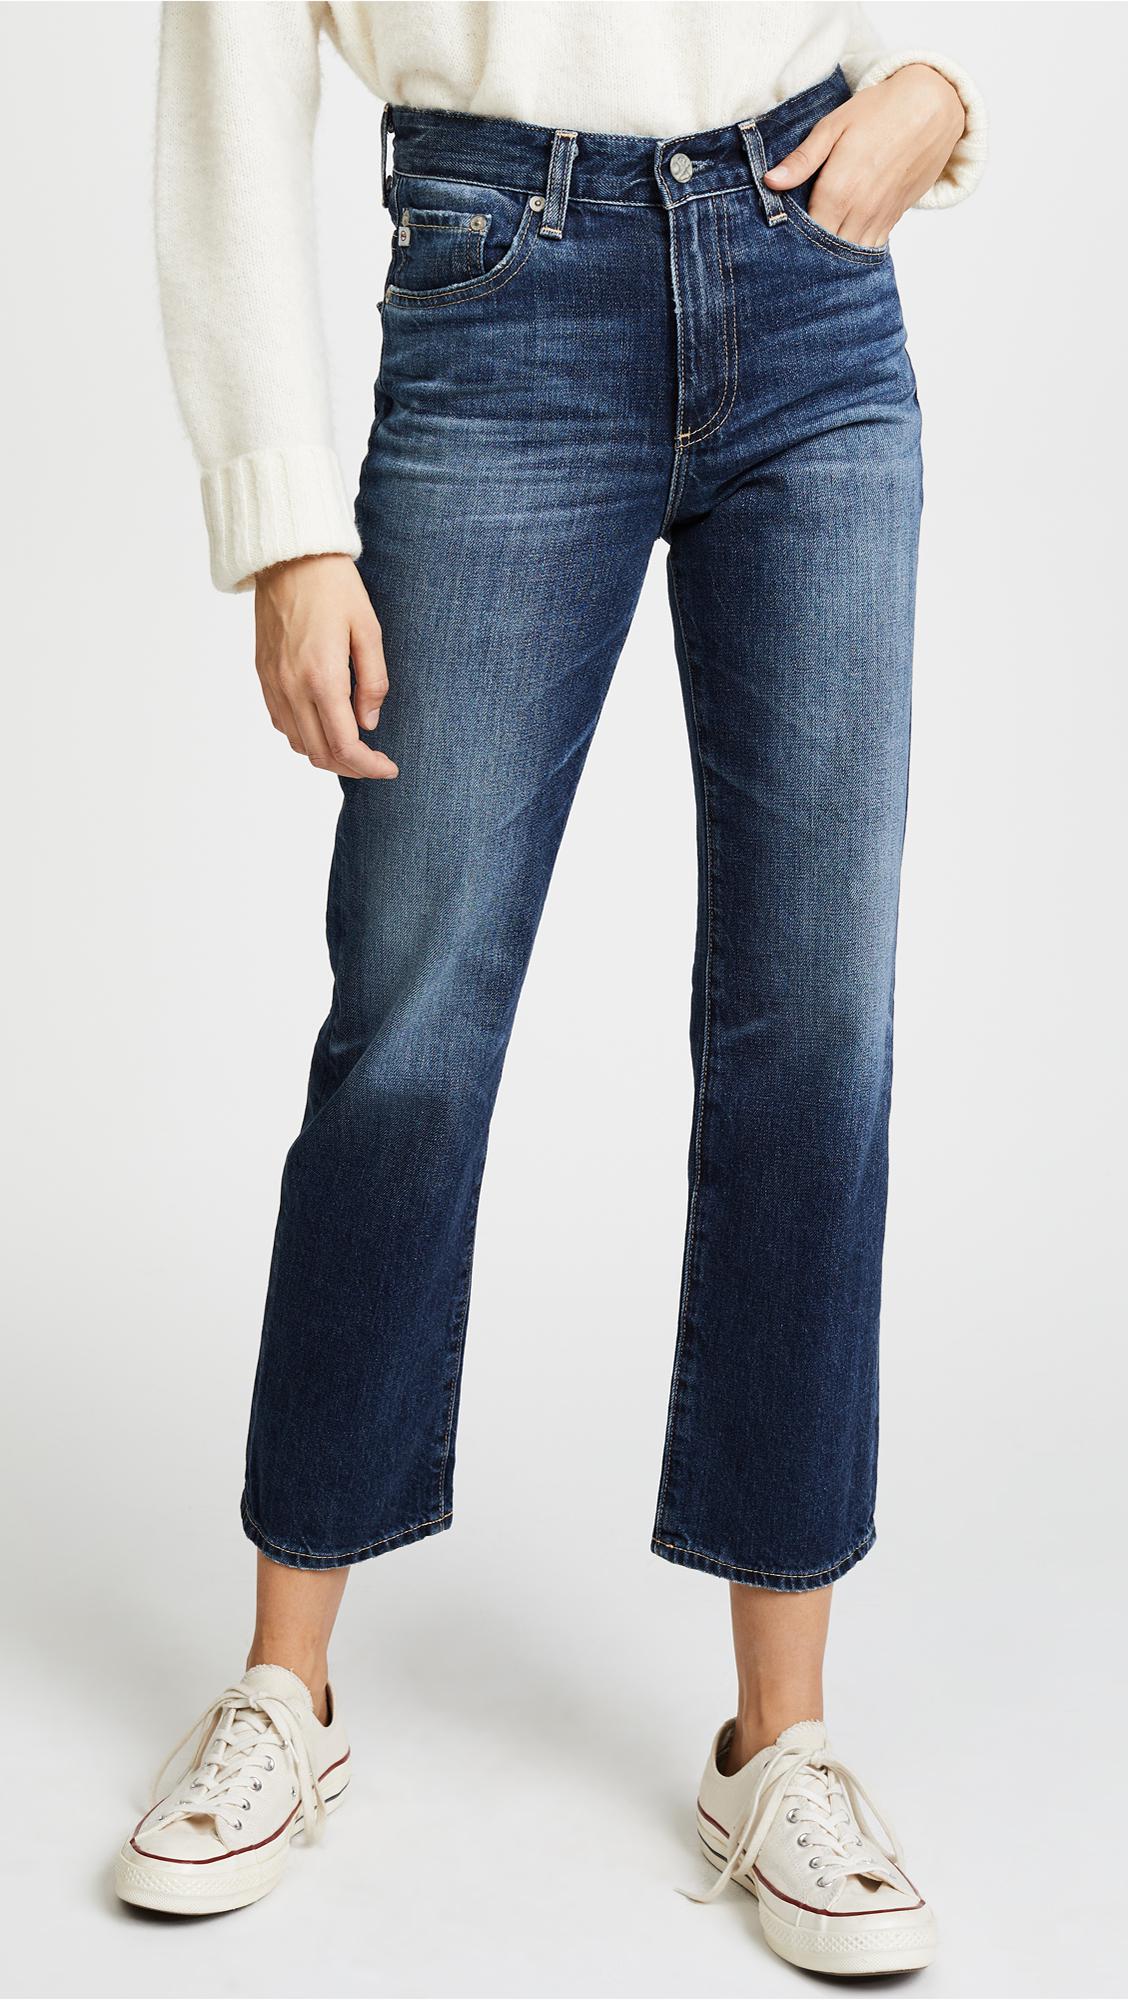 shopbop jeans